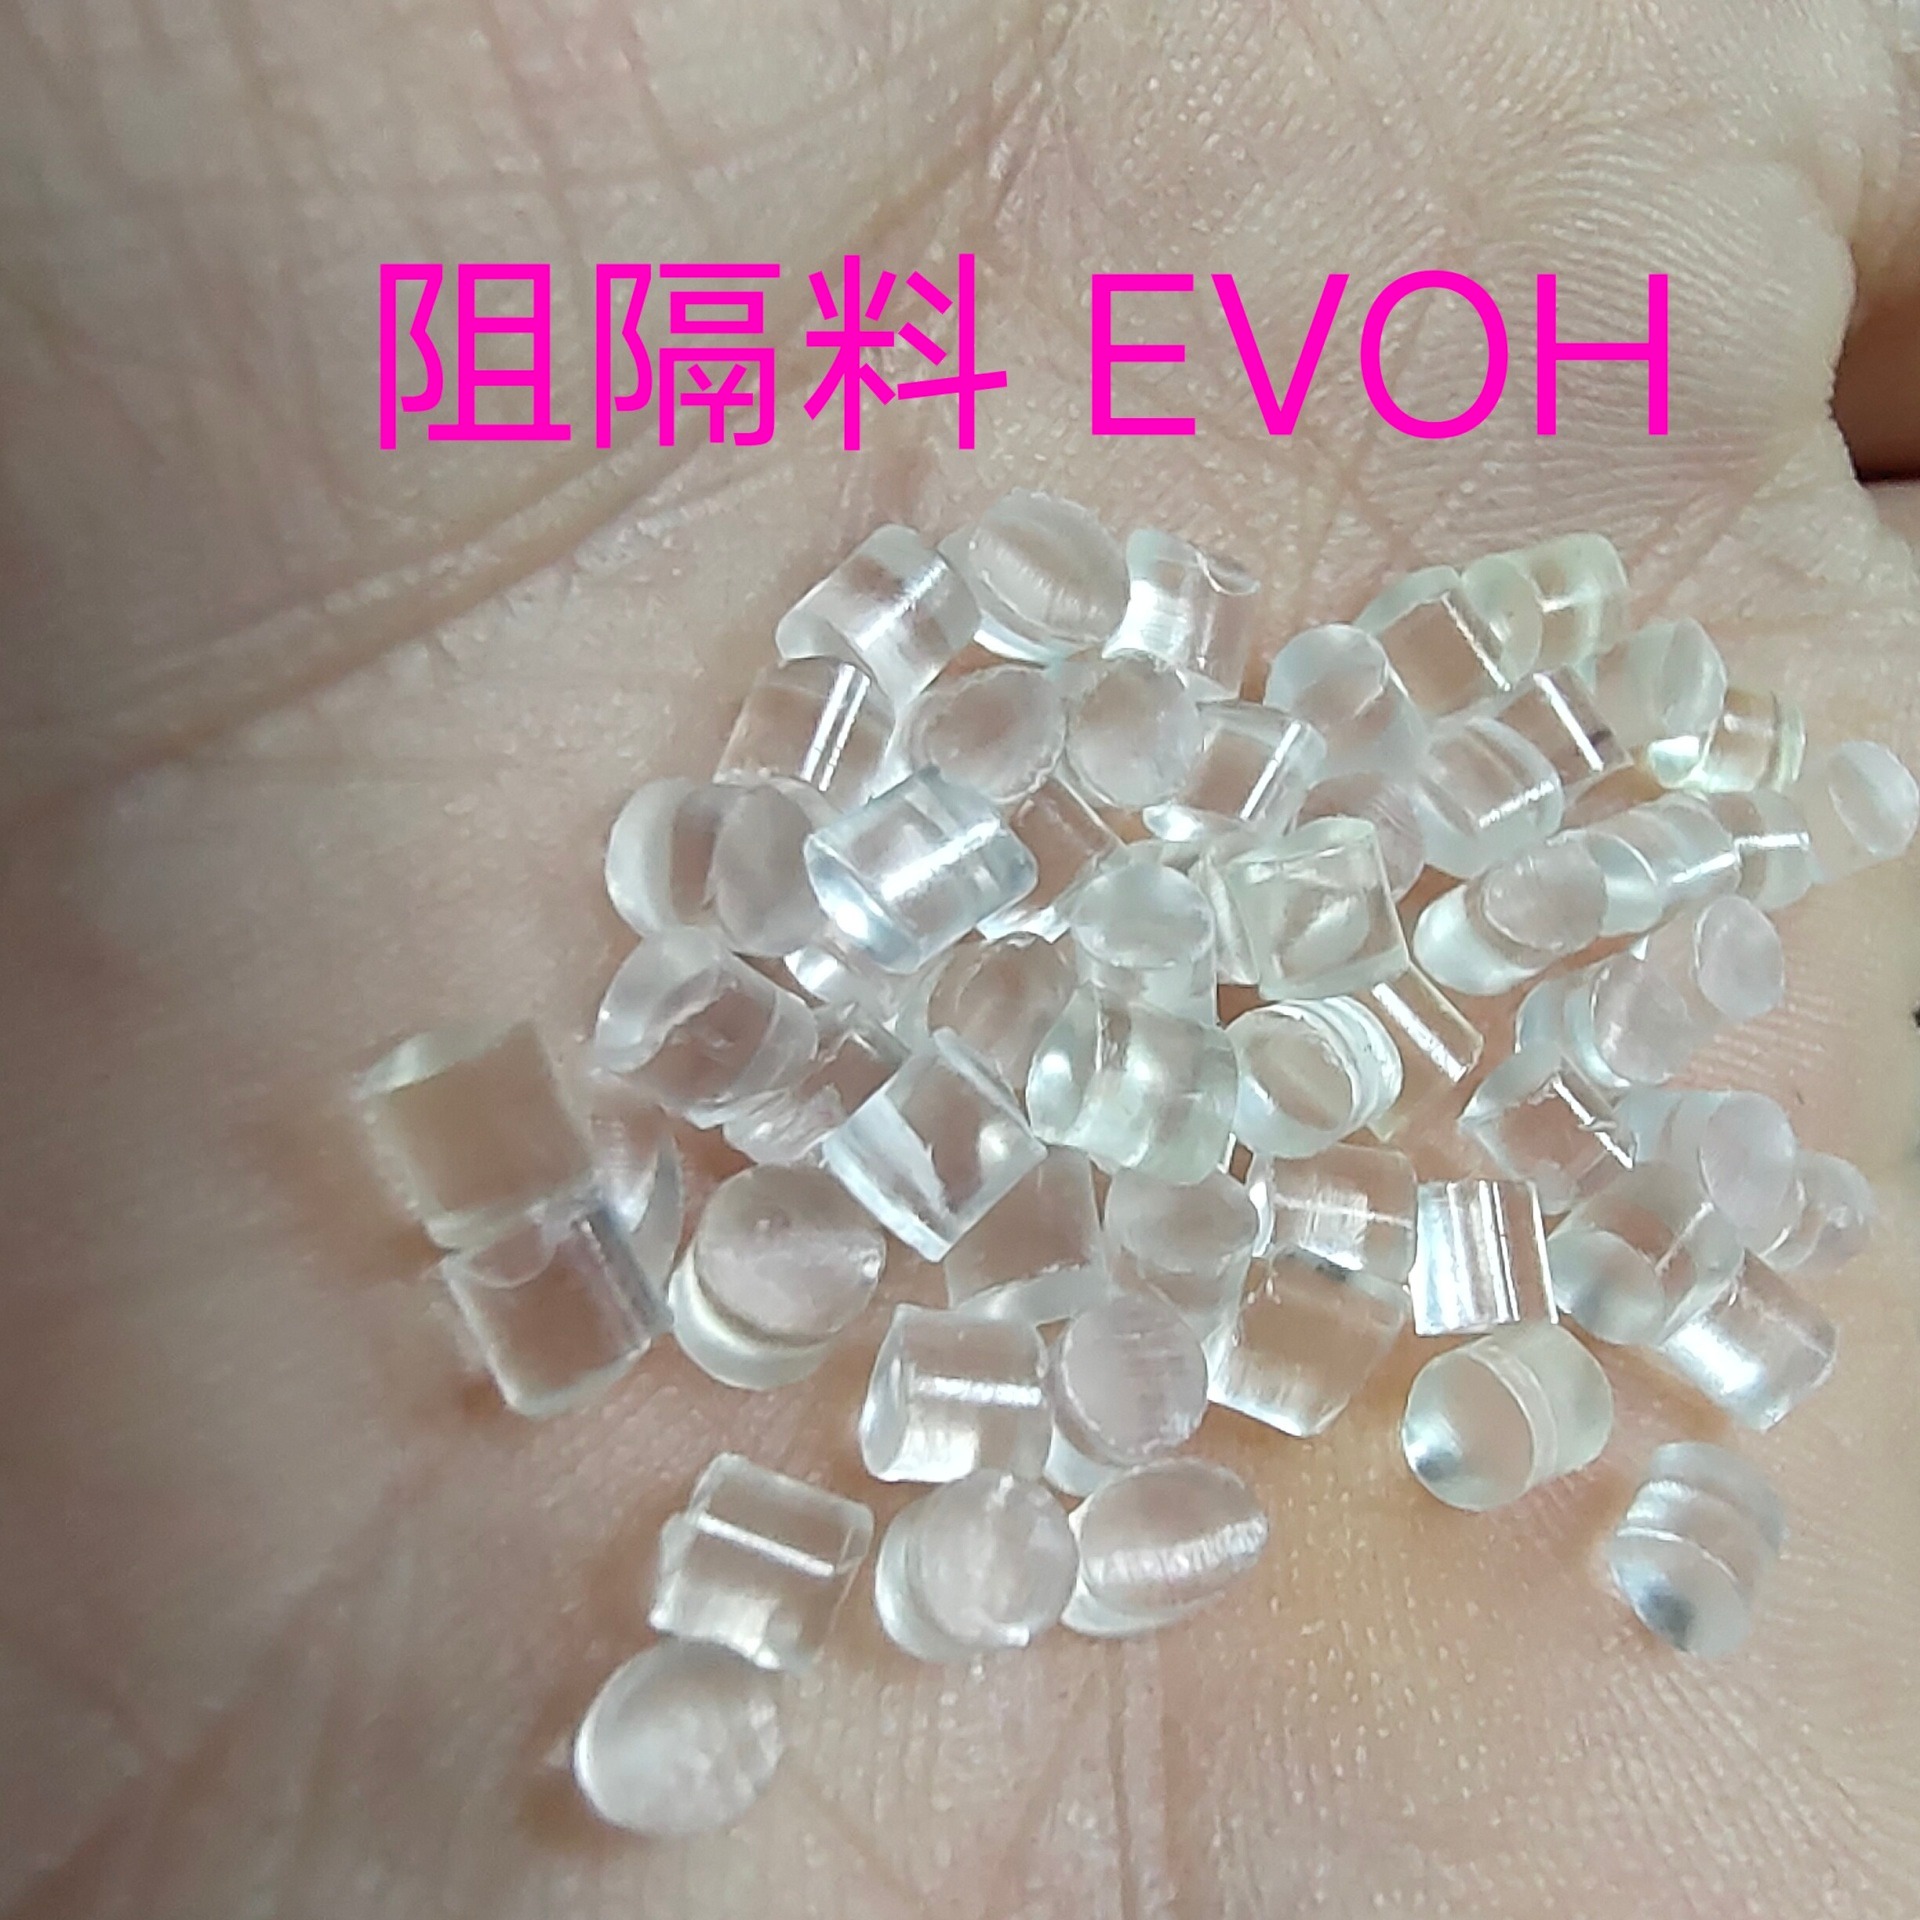 阻隔料  EVOH  透明塑料  薄膜料  日本可乐丽  挤出级